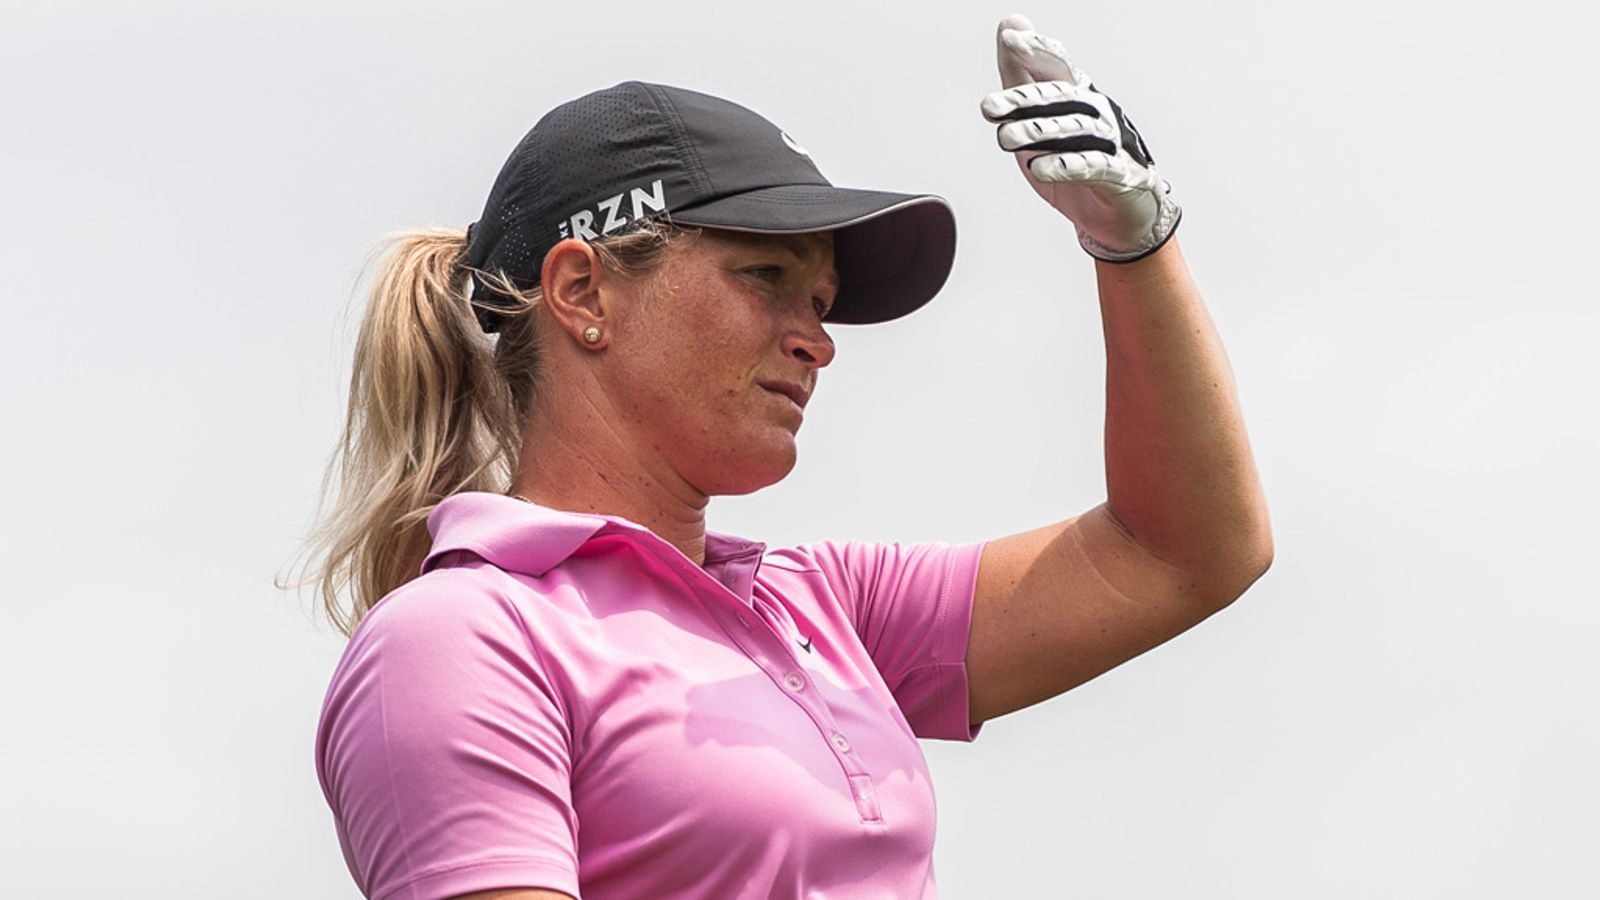 Suzann Pettersen: World No. 2 Golf Champion Reveals Her 